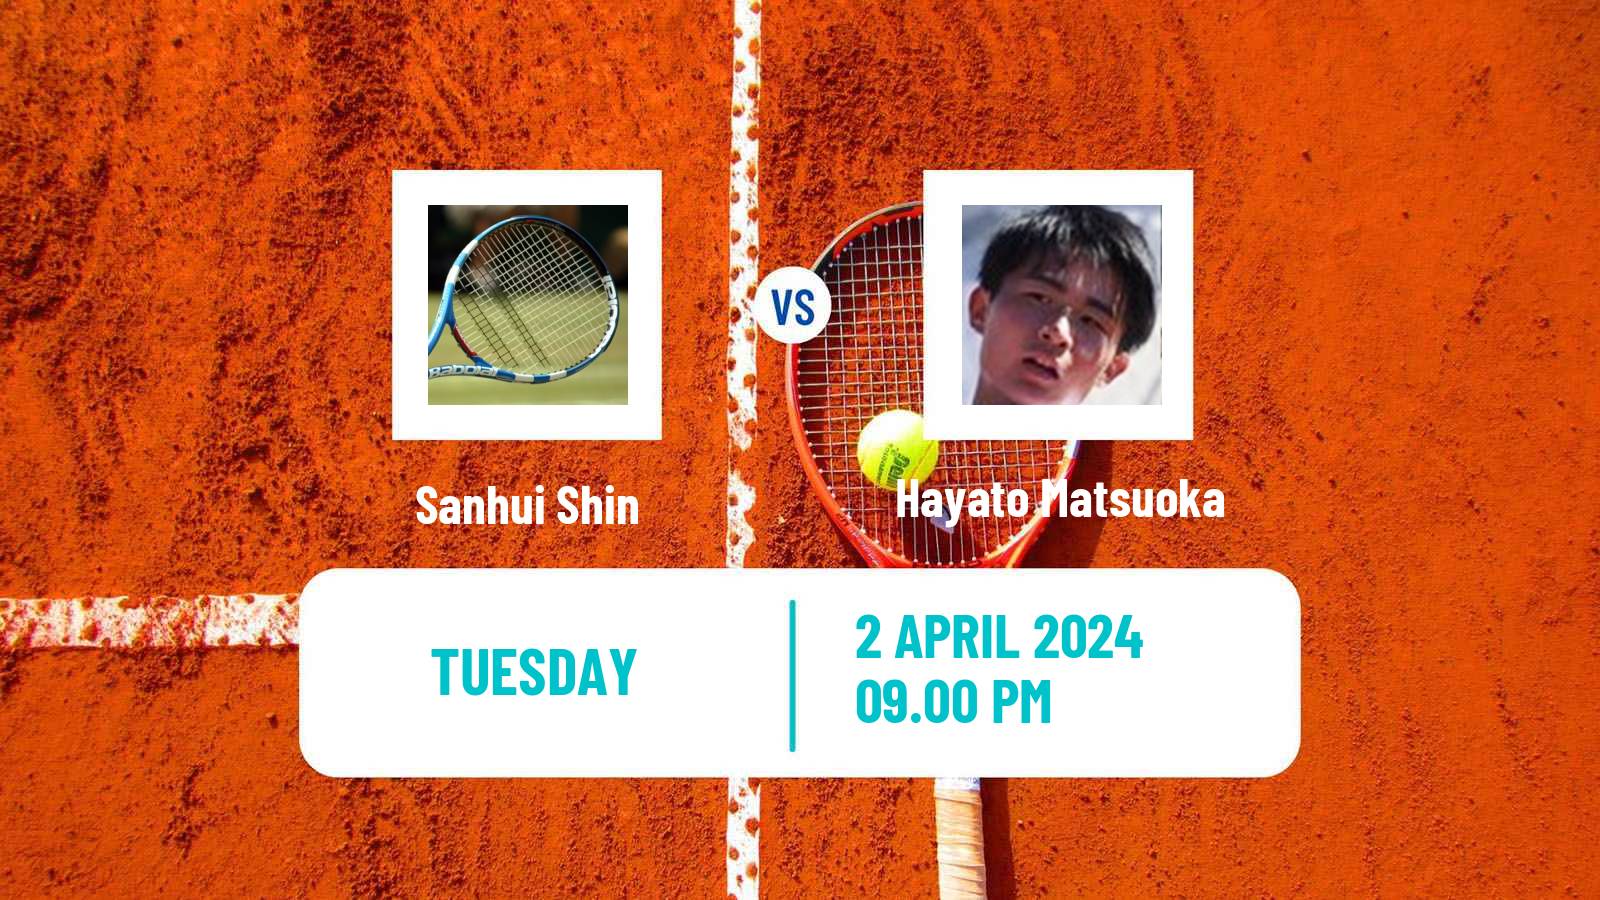 Tennis ITF M15 Kashiwa Men Sanhui Shin - Hayato Matsuoka